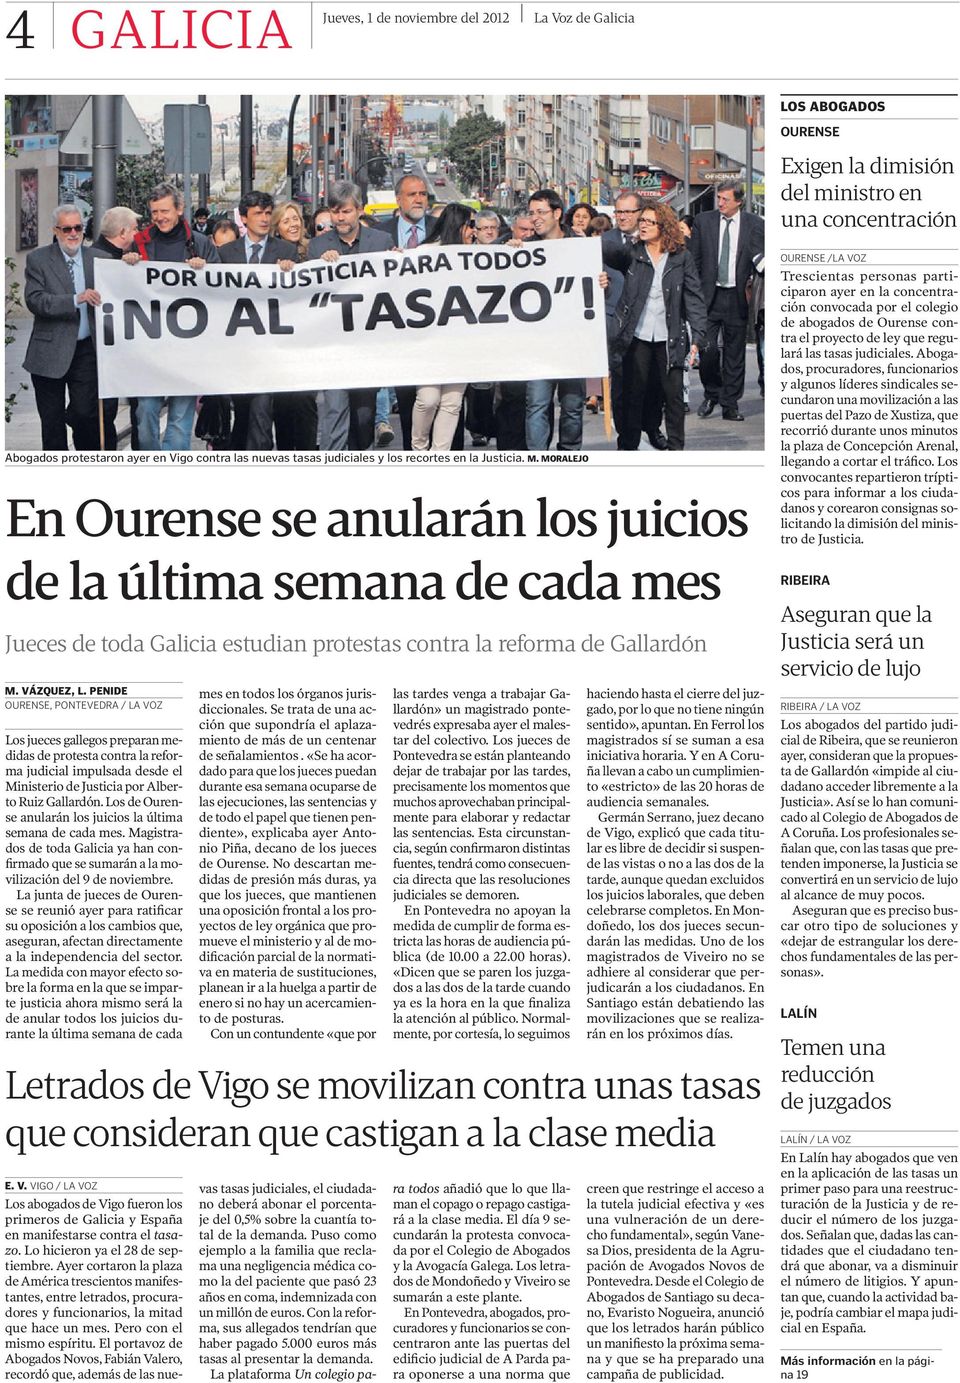 VÁZQUEZ, L. PENIDE OURENSE, PONTEVEDRA / LA VOZ Los jueces gallegos preparan medidas de protesta contra la reforma judicial impulsada desde el Ministerio de Justicia por Alberto Ruiz Gallardón.